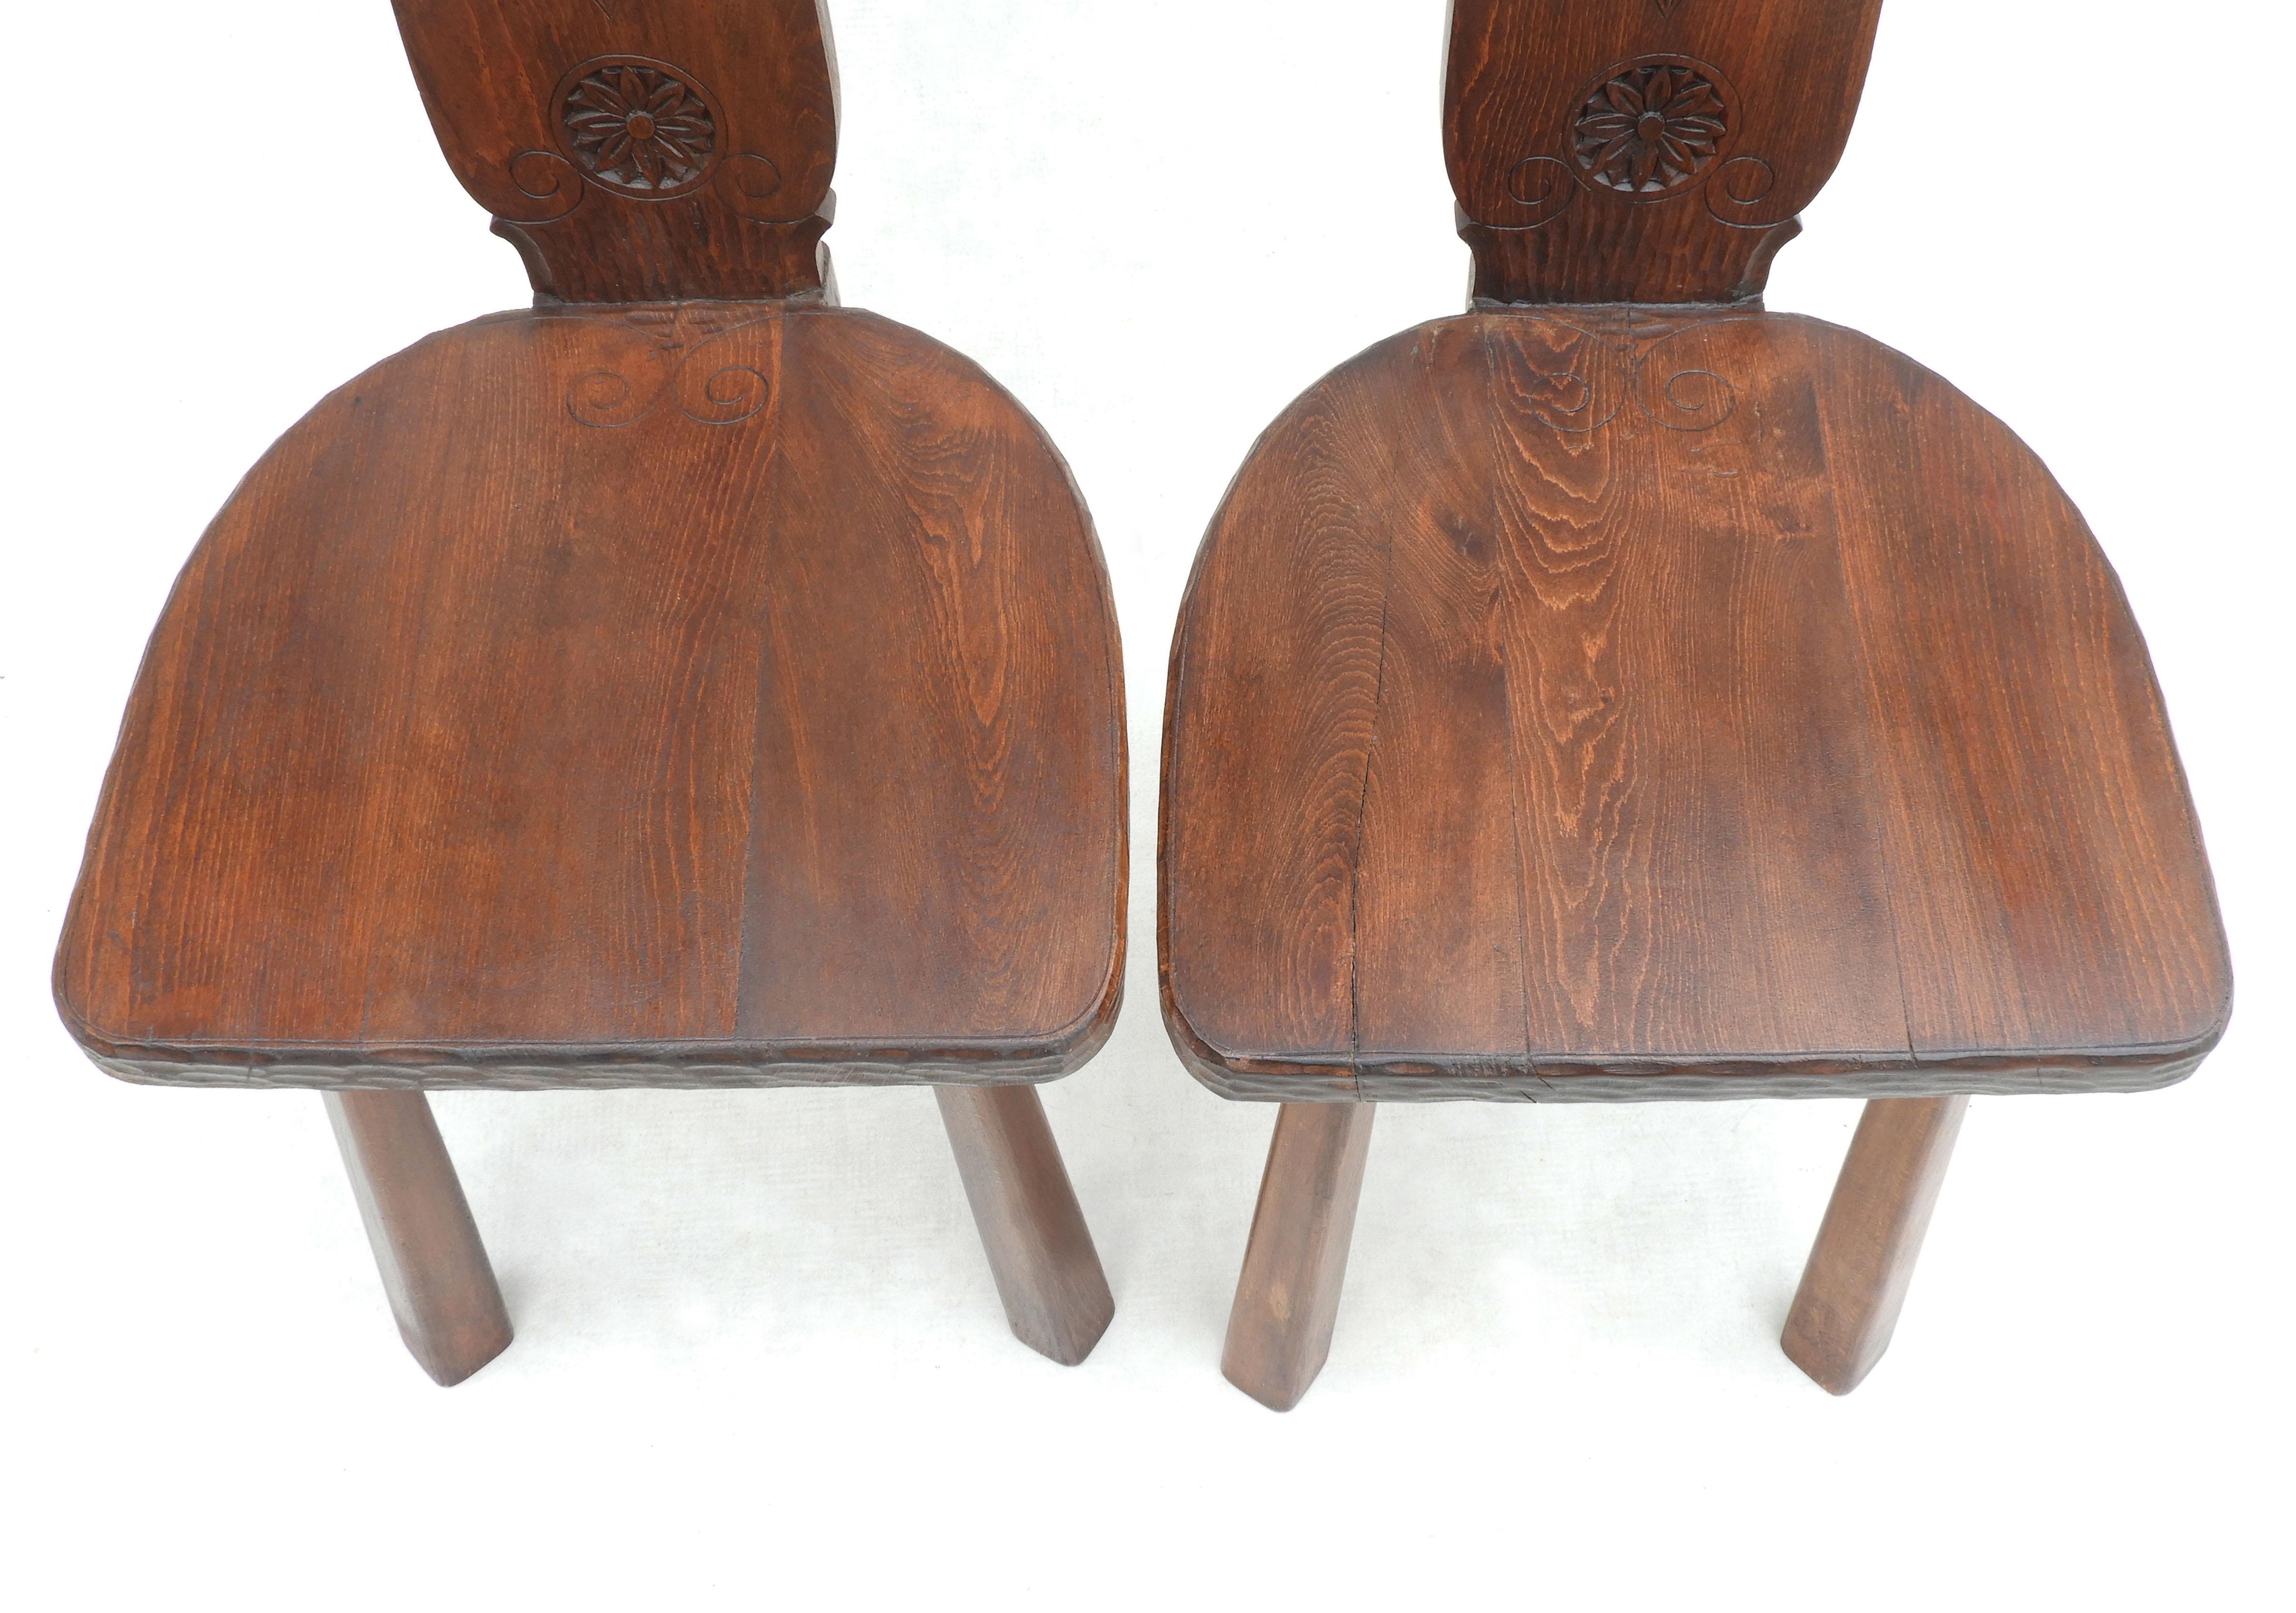 Pair of Basque Tripod Chairs 1950s European Folk Art For Sale 5